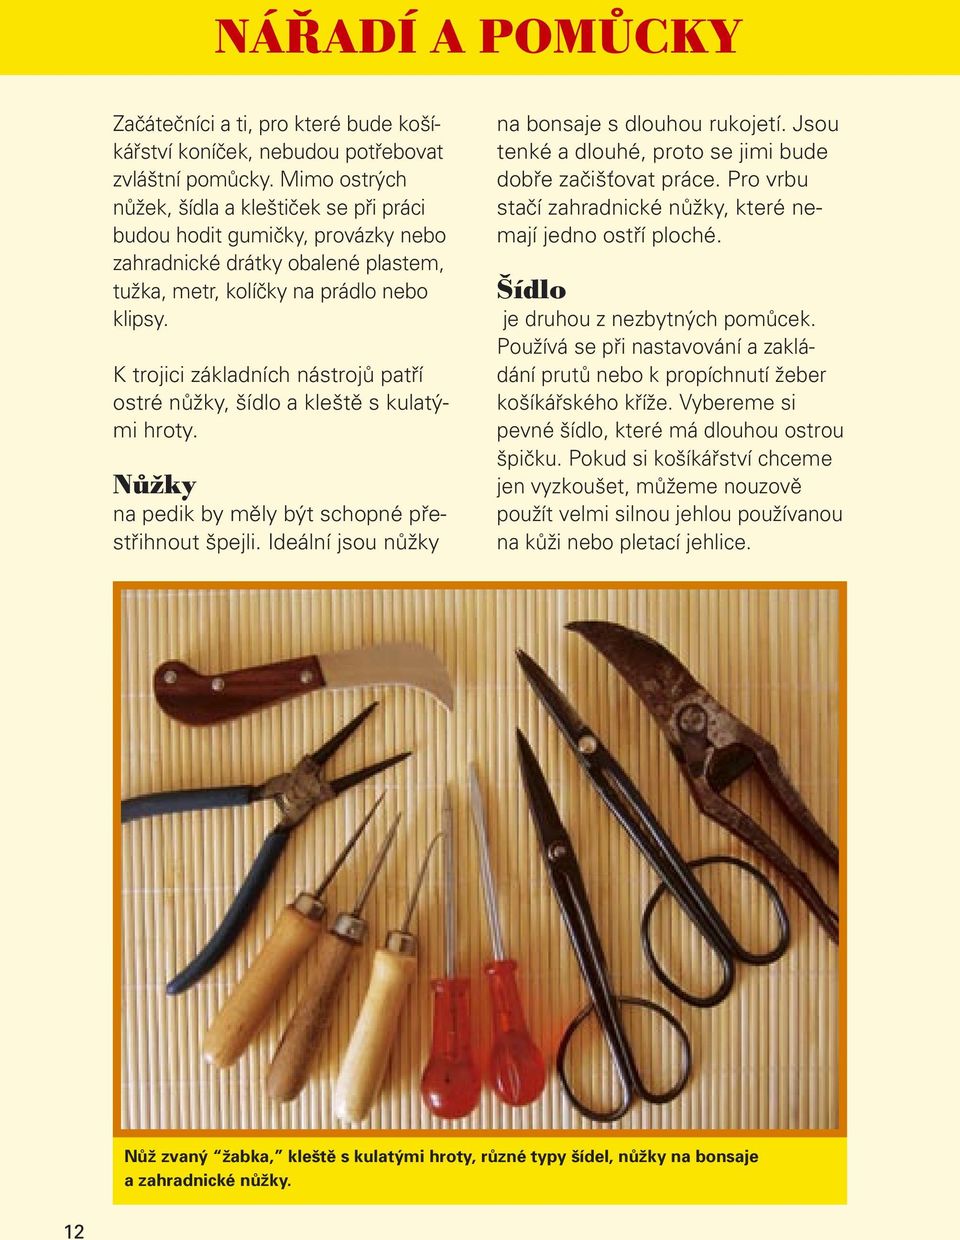 K trojici základních nástrojů patří ostré nůžky, šídlo a kleště s kulatými hroty. Nůžky na pedik by měly být schopné přestřihnout špejli. Ideální jsou nůžky na bonsaje s dlouhou rukojetí.